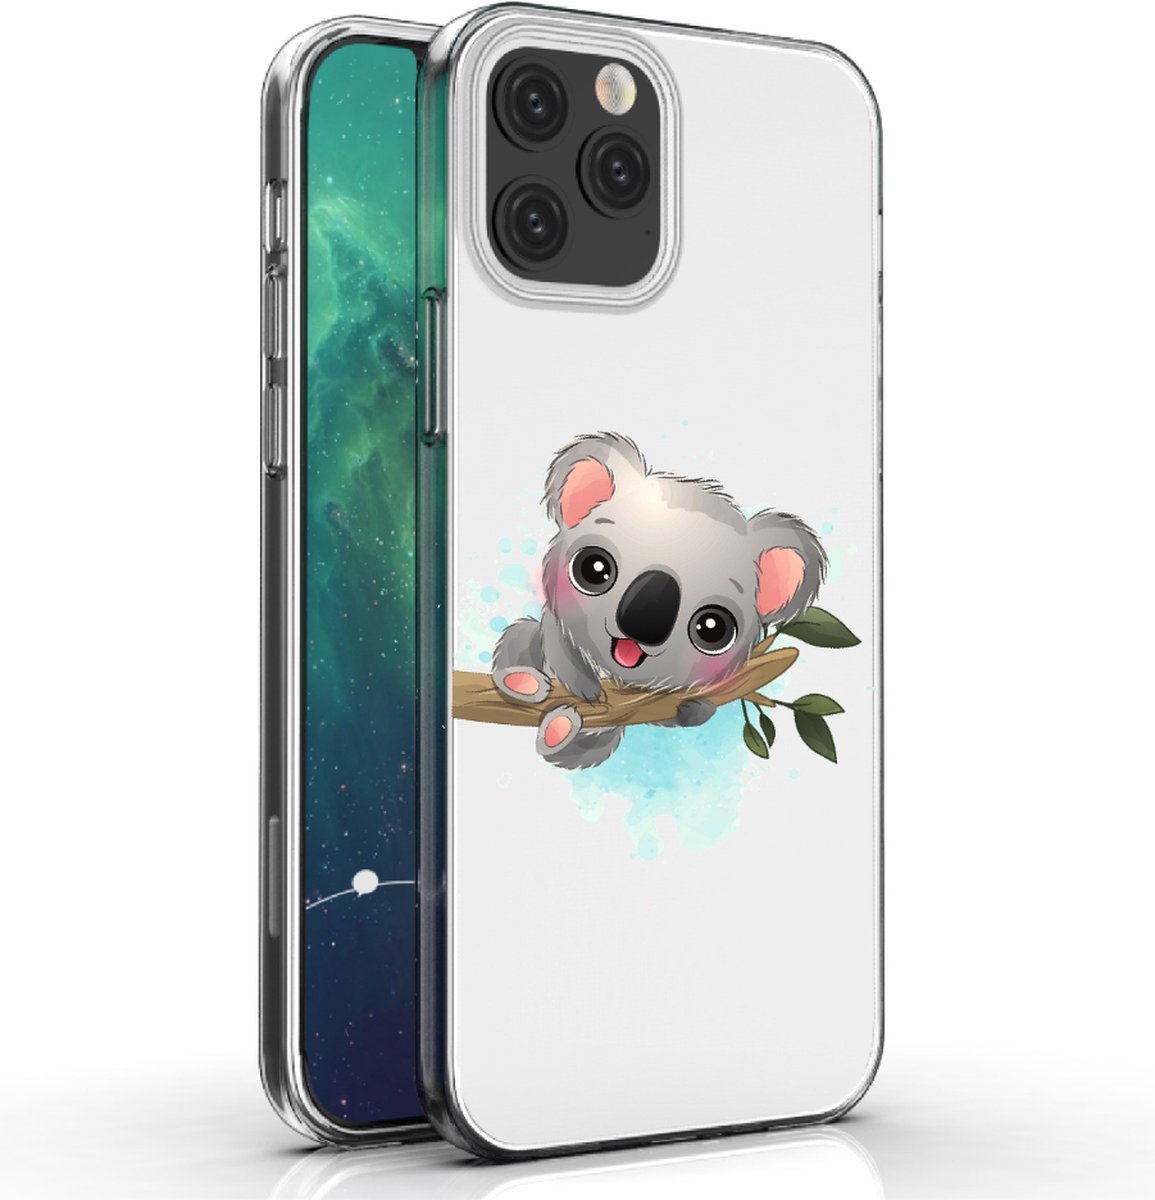 Apple Iphone 12 Pro Max telefoonhoesje transparant siliconen hoesje - kleine koala